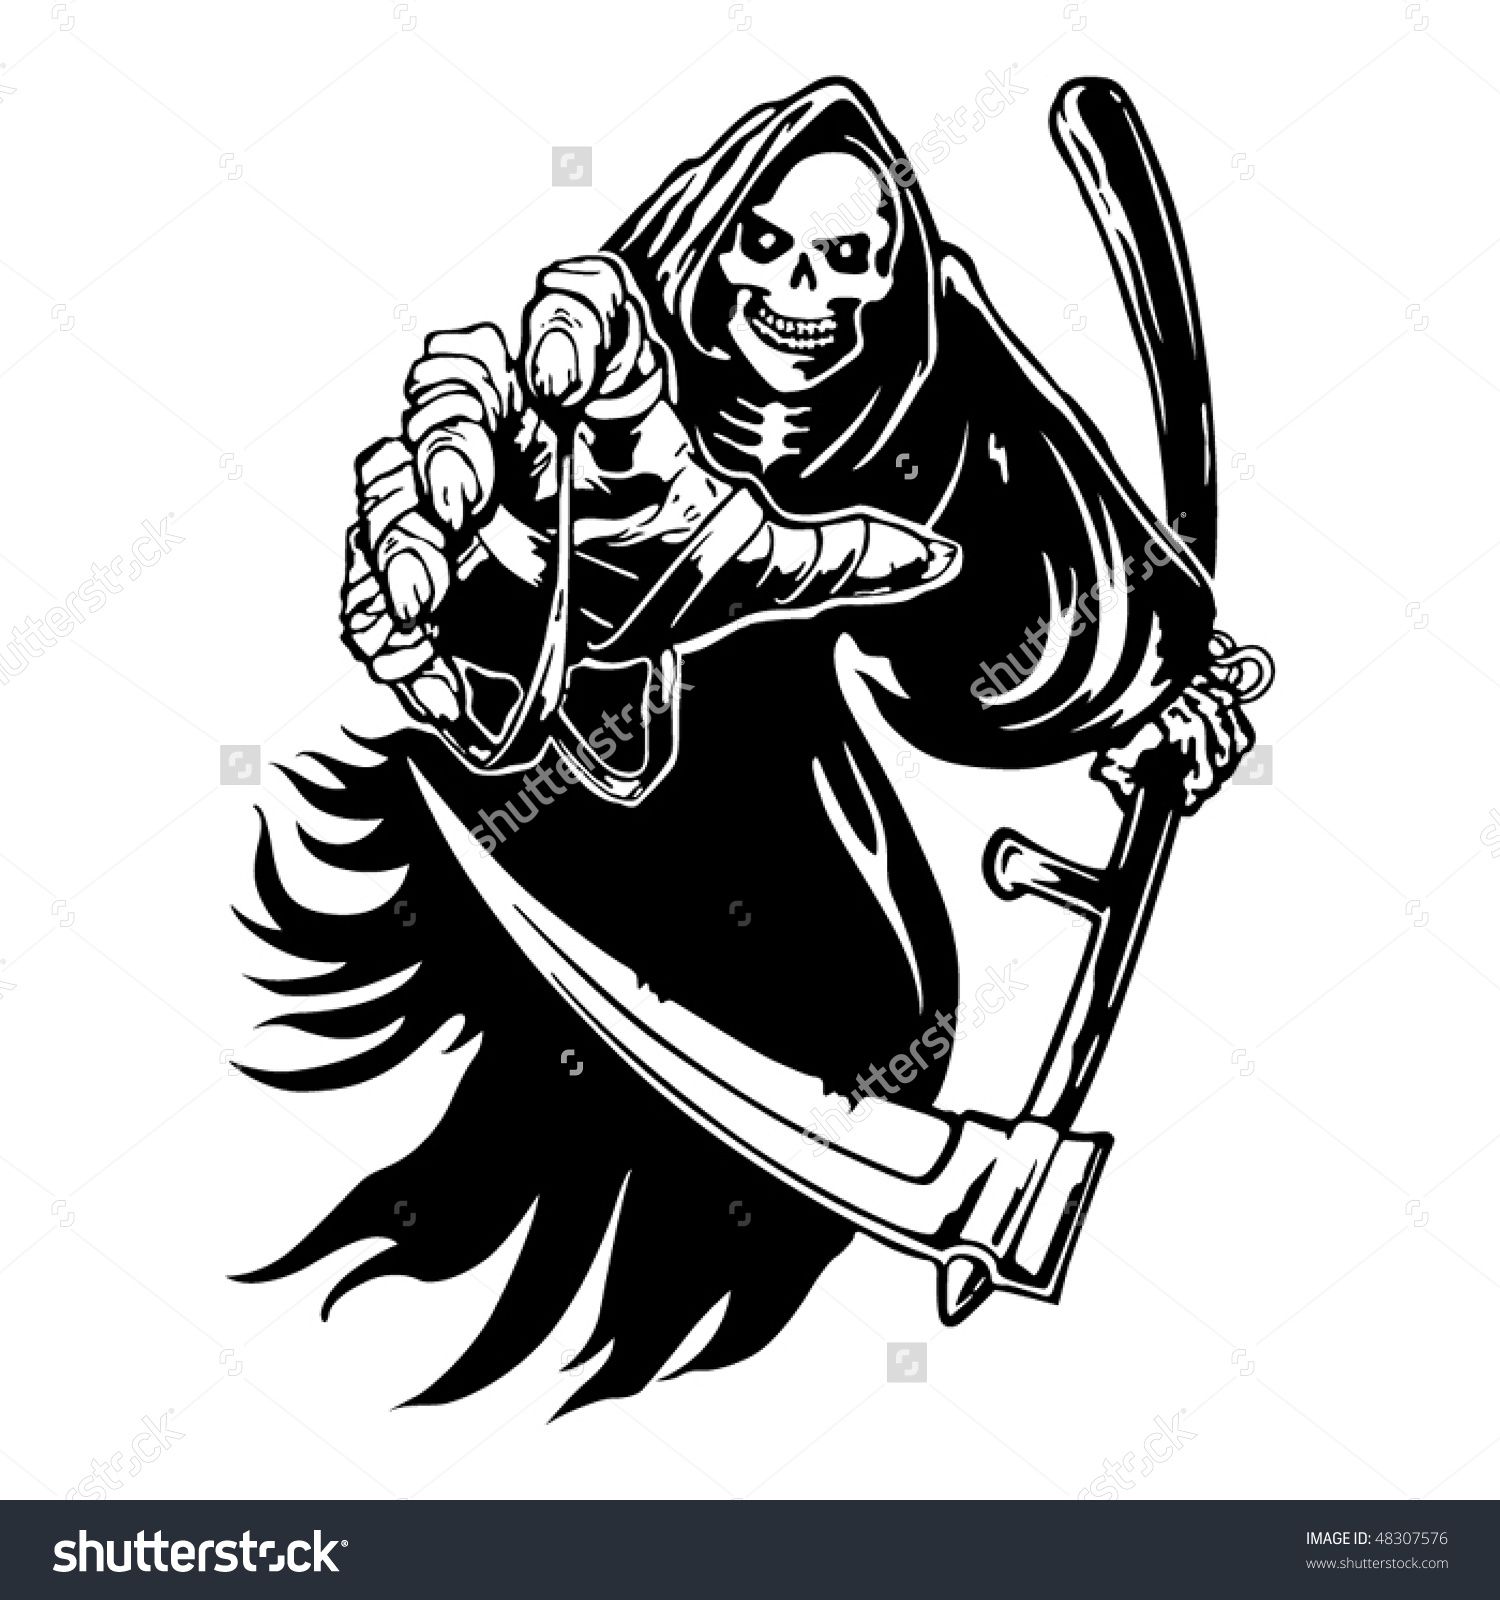 Grim reaper clipart stock photo. Vectors vector clip art